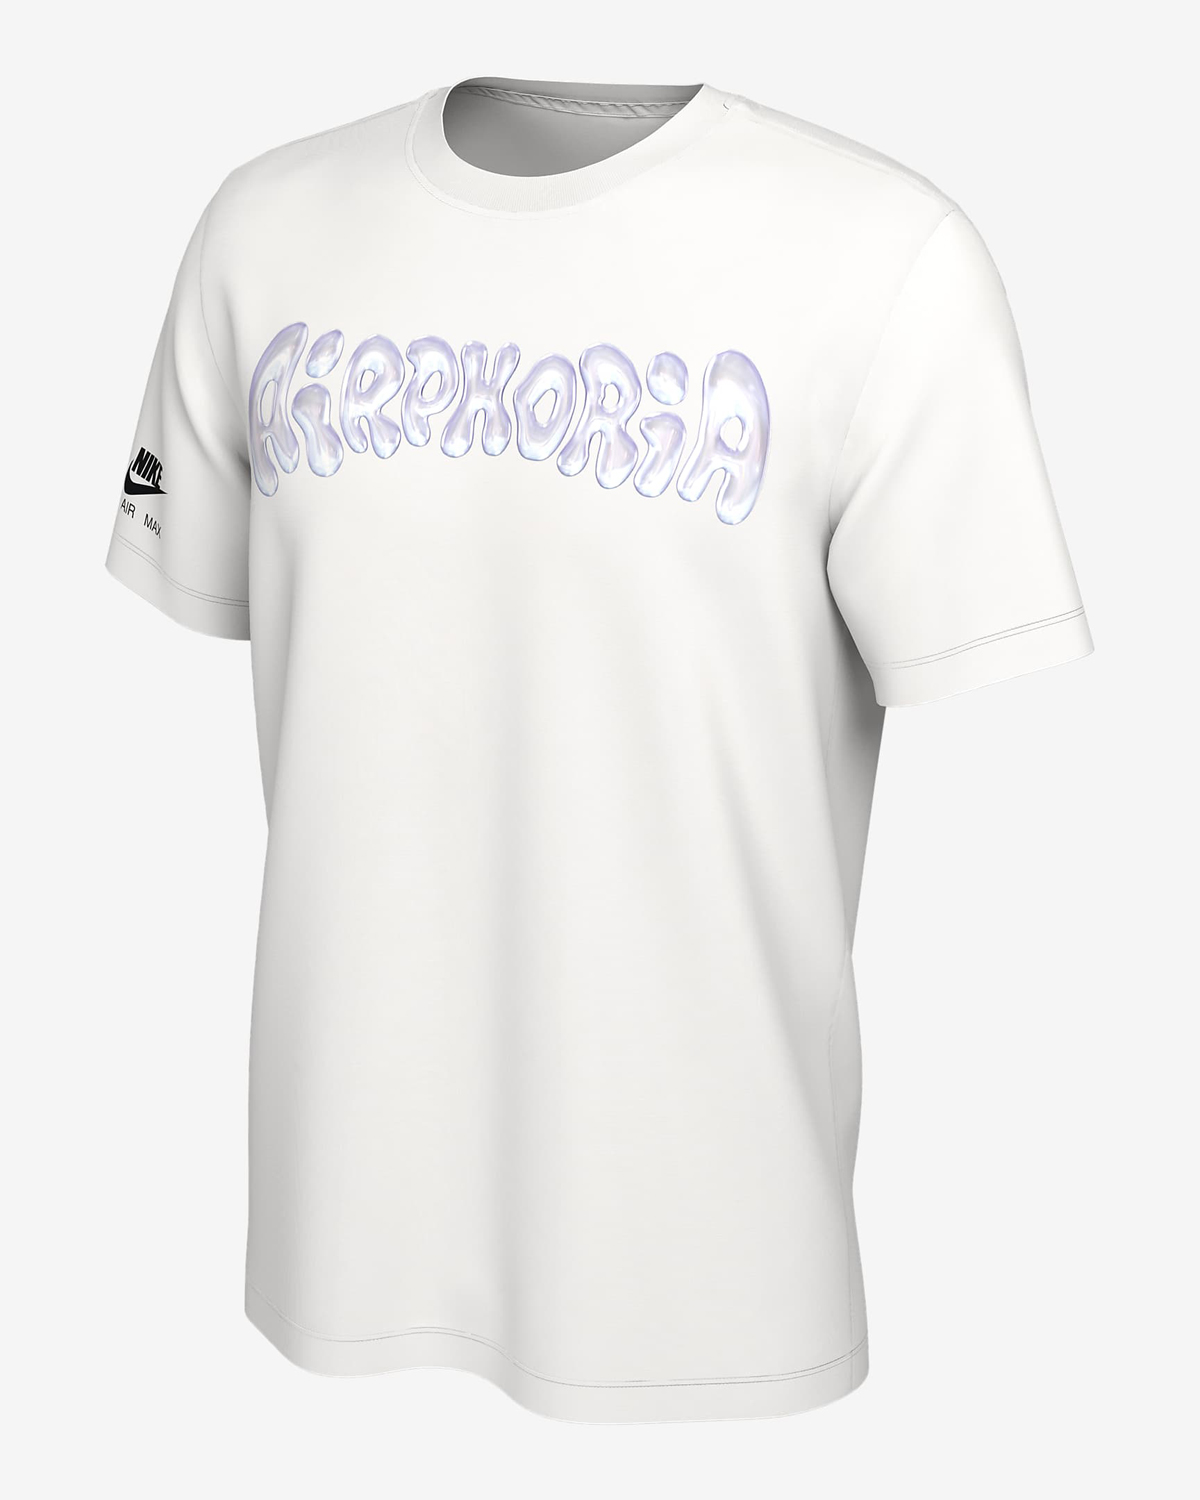 Nike-Fortnite-Airphoria-T-Shirt-White-1